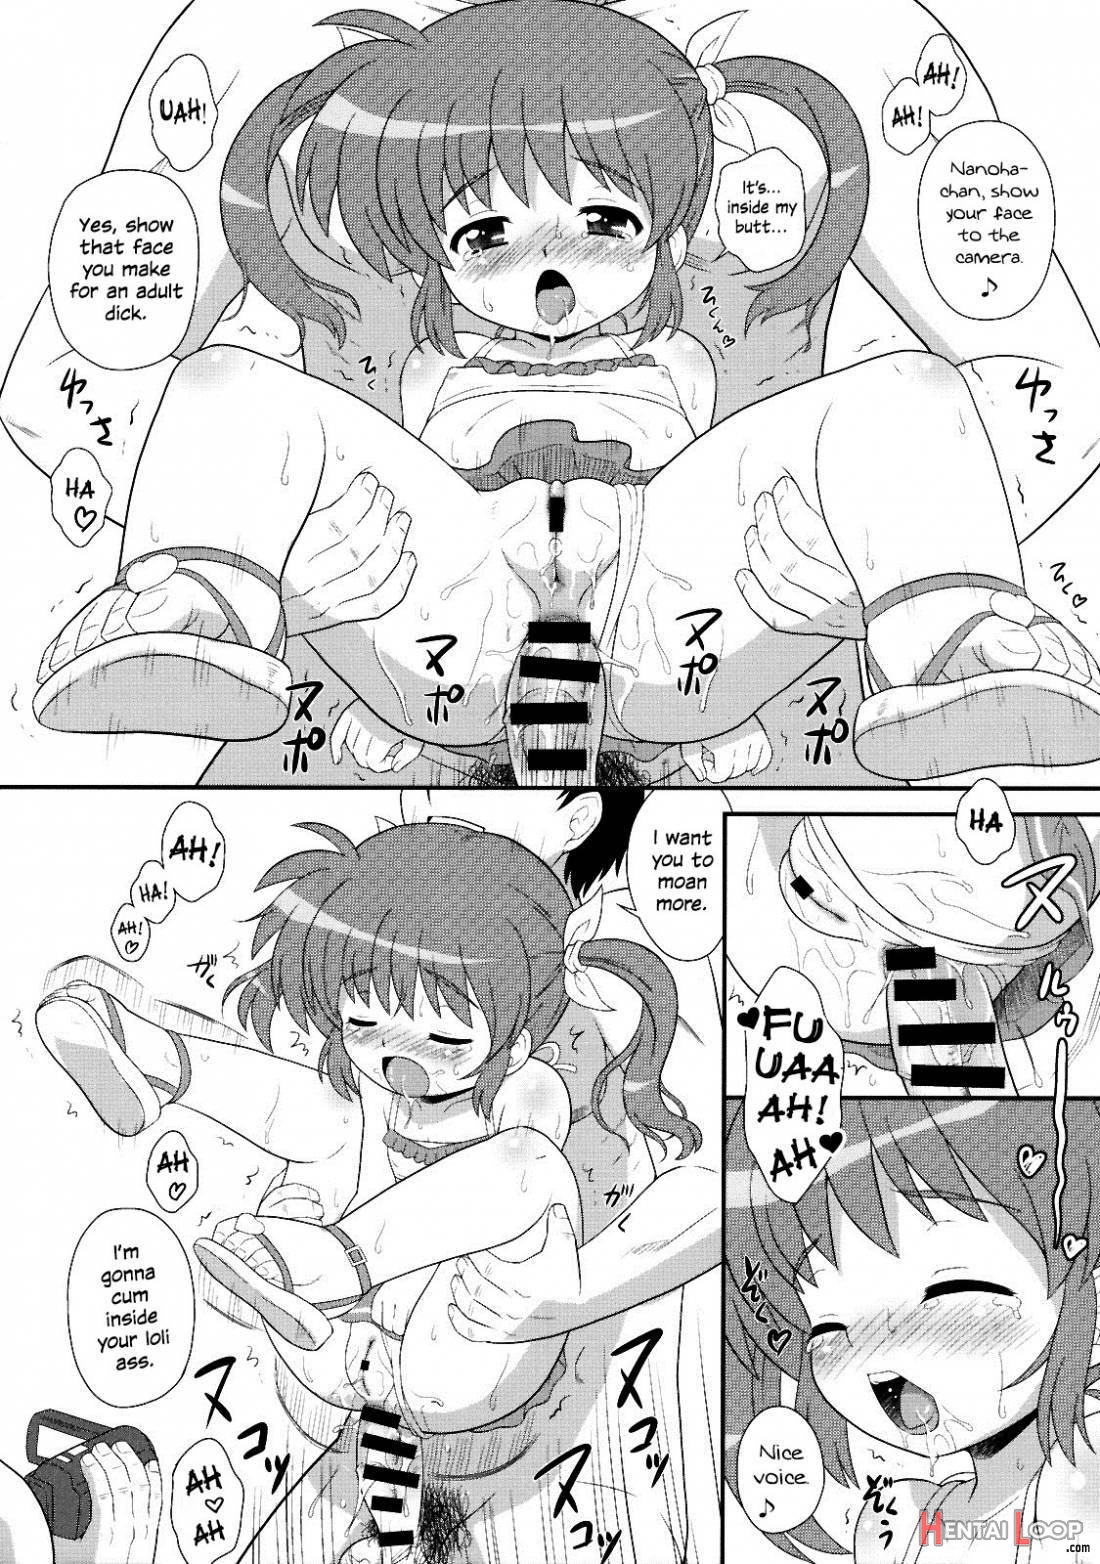 Nanoha-chan Jii☆ace page 9